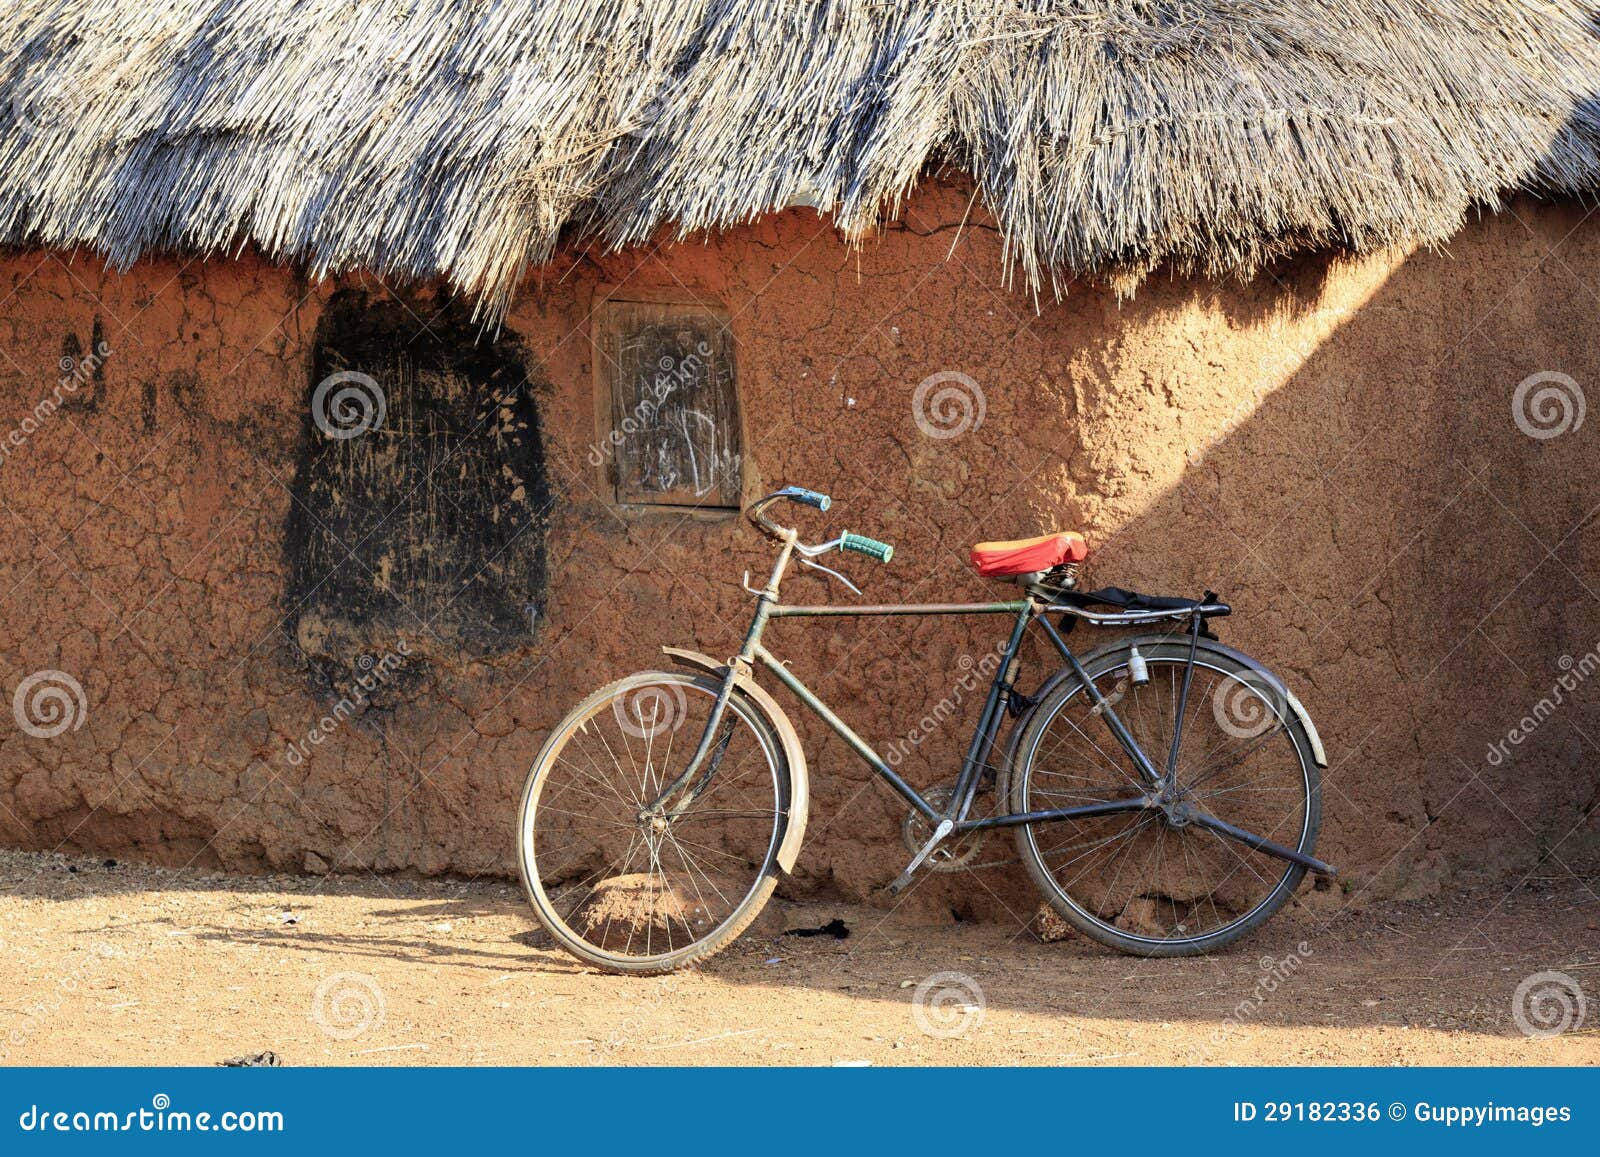 Capanne e bici del fango in un villaggio africano tradizionale